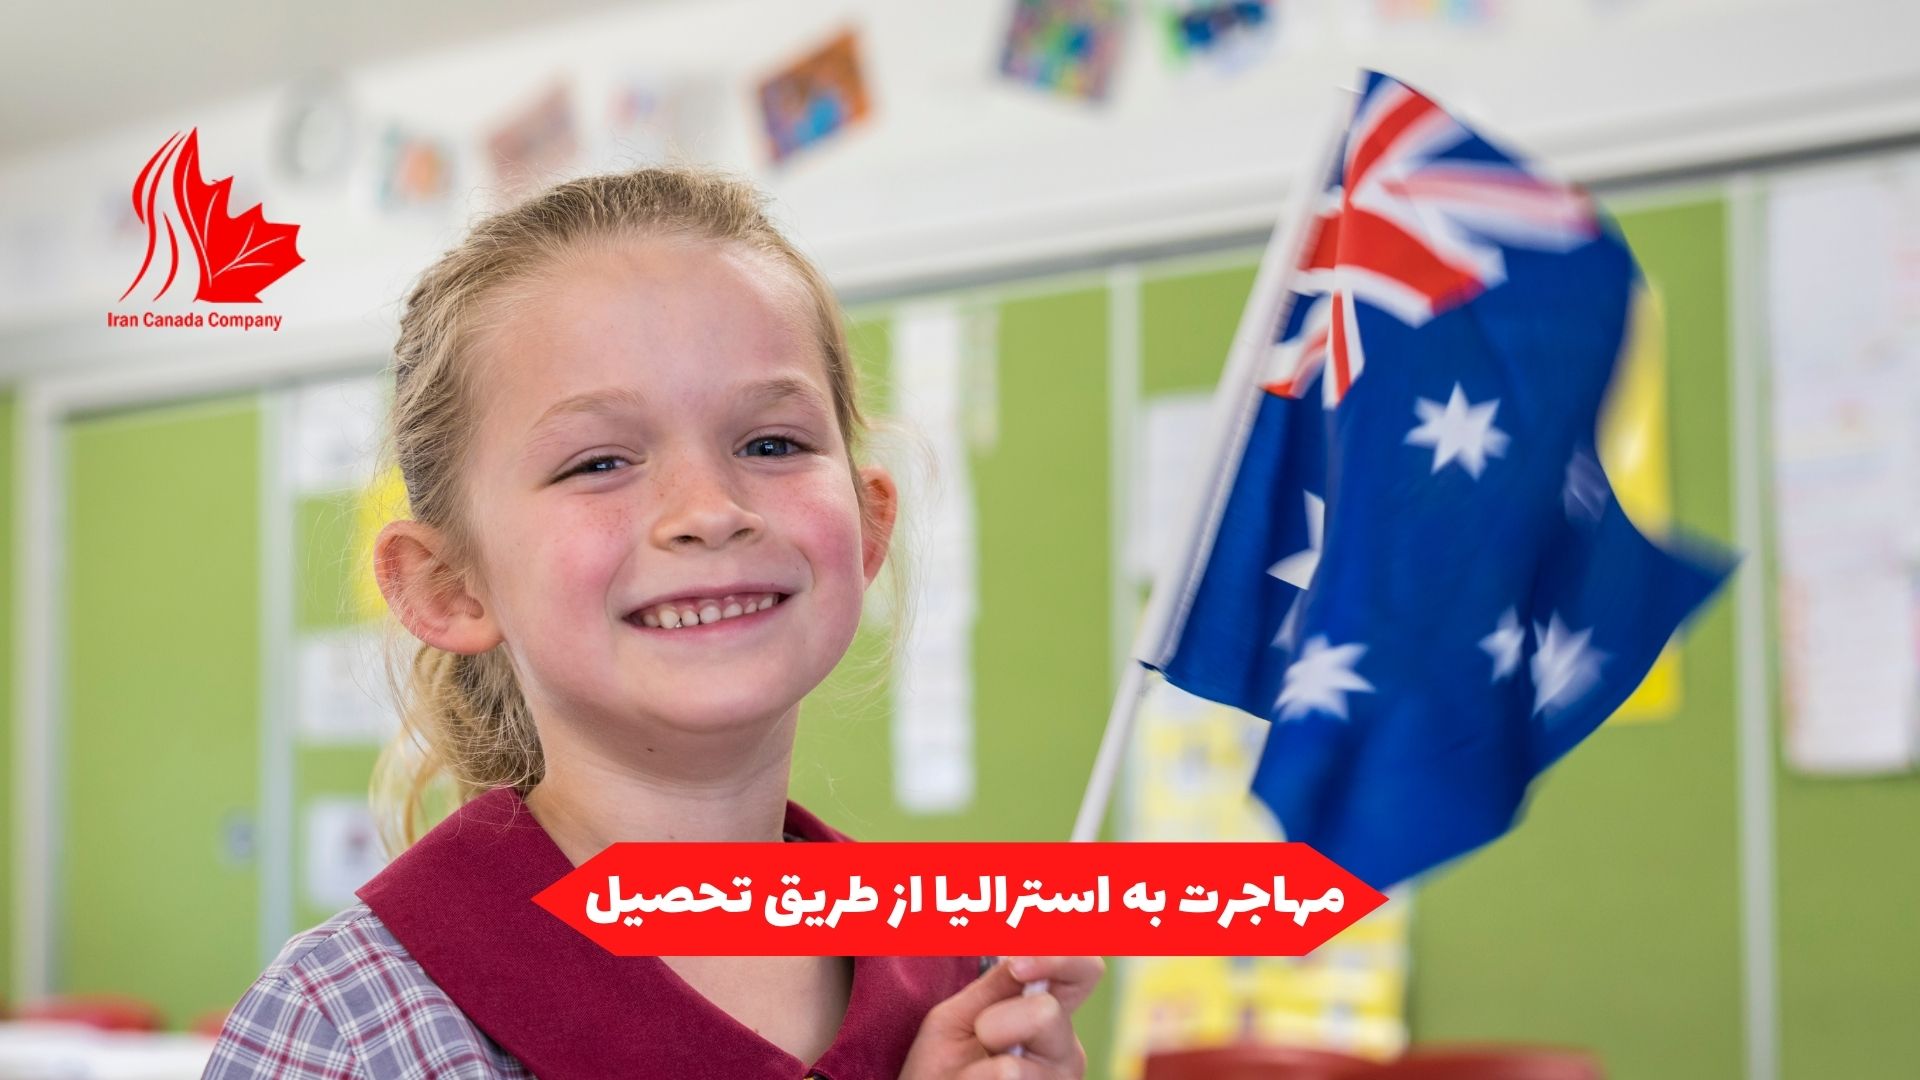 مهاجرت به استرالیا از طریق تحصیل